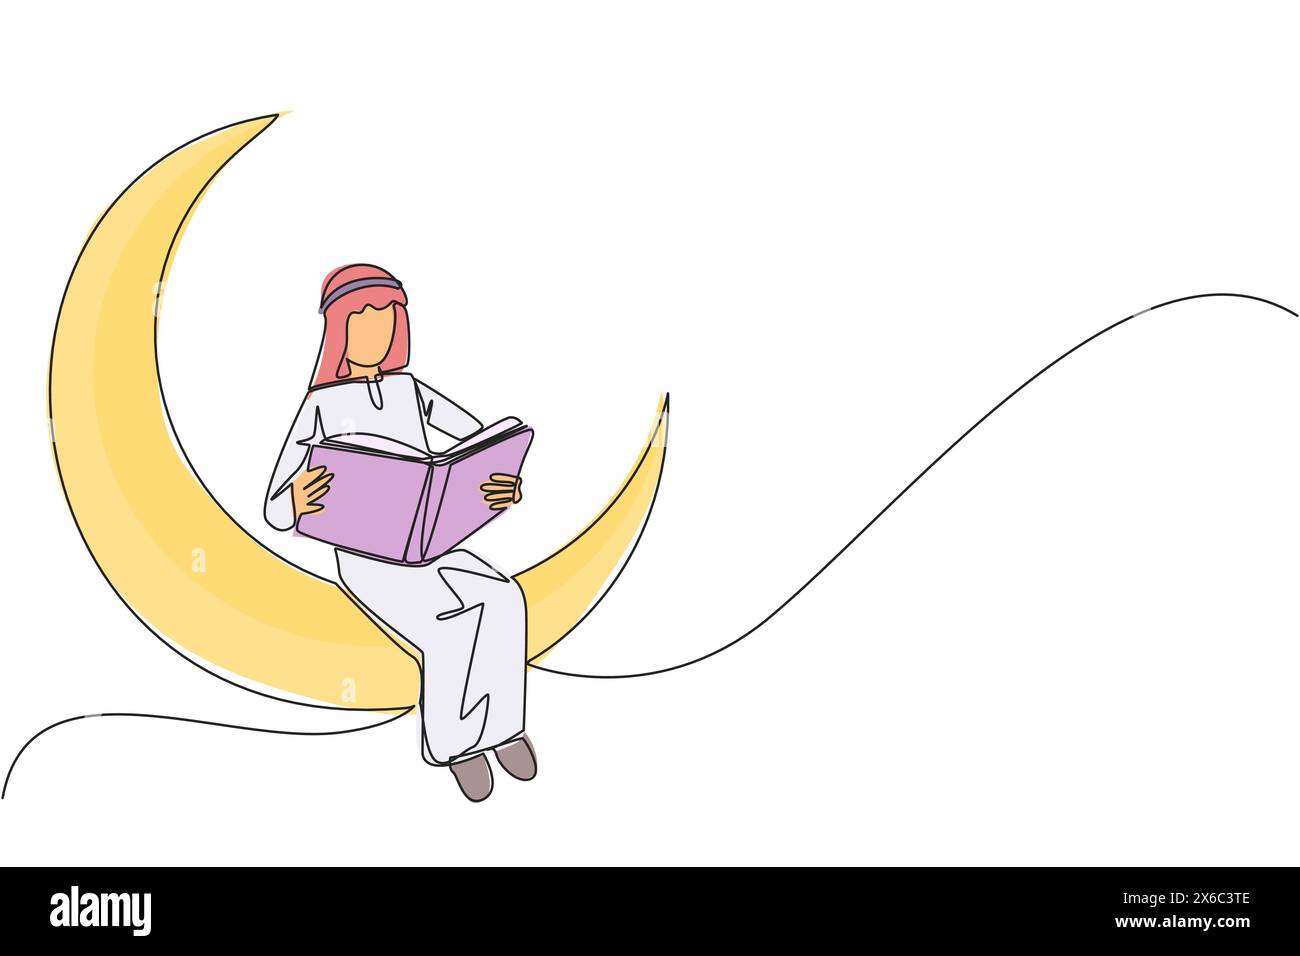 Simple une ligne dessinant un homme arabe assis sur le croissant de lune lisant un livre. Métaphore de la lecture d'une histoire de fées avant de dormir. Lire jusqu'à tard. Love rea Illustration de Vecteur